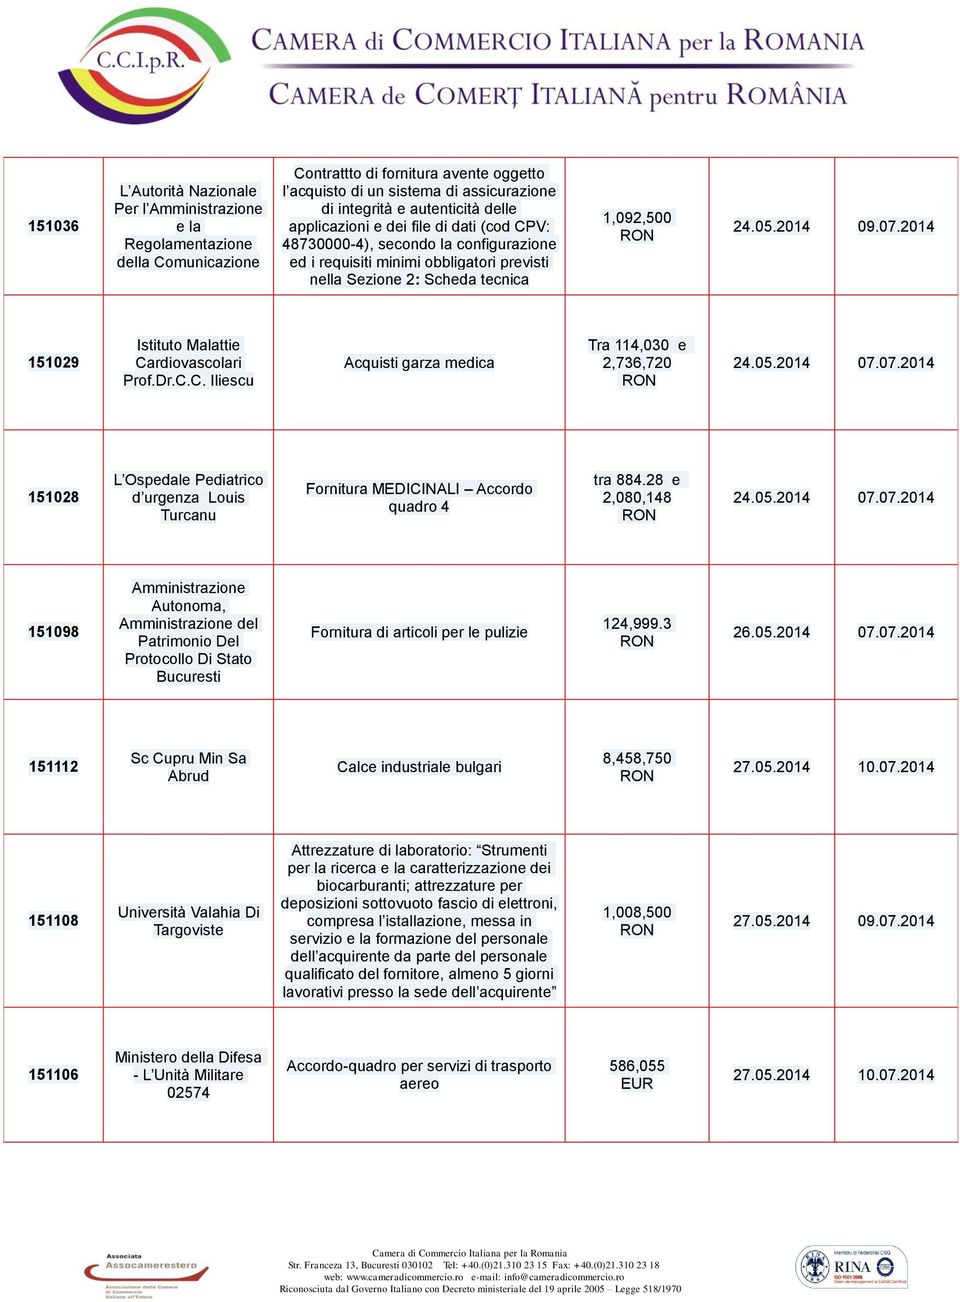 2014 151029 Istituto Malattie Cardiovascolari Prof.Dr.C.C. Iliescu Acquisti garza medica Tra 114,030 e 2,736,720 24.05.2014 07.